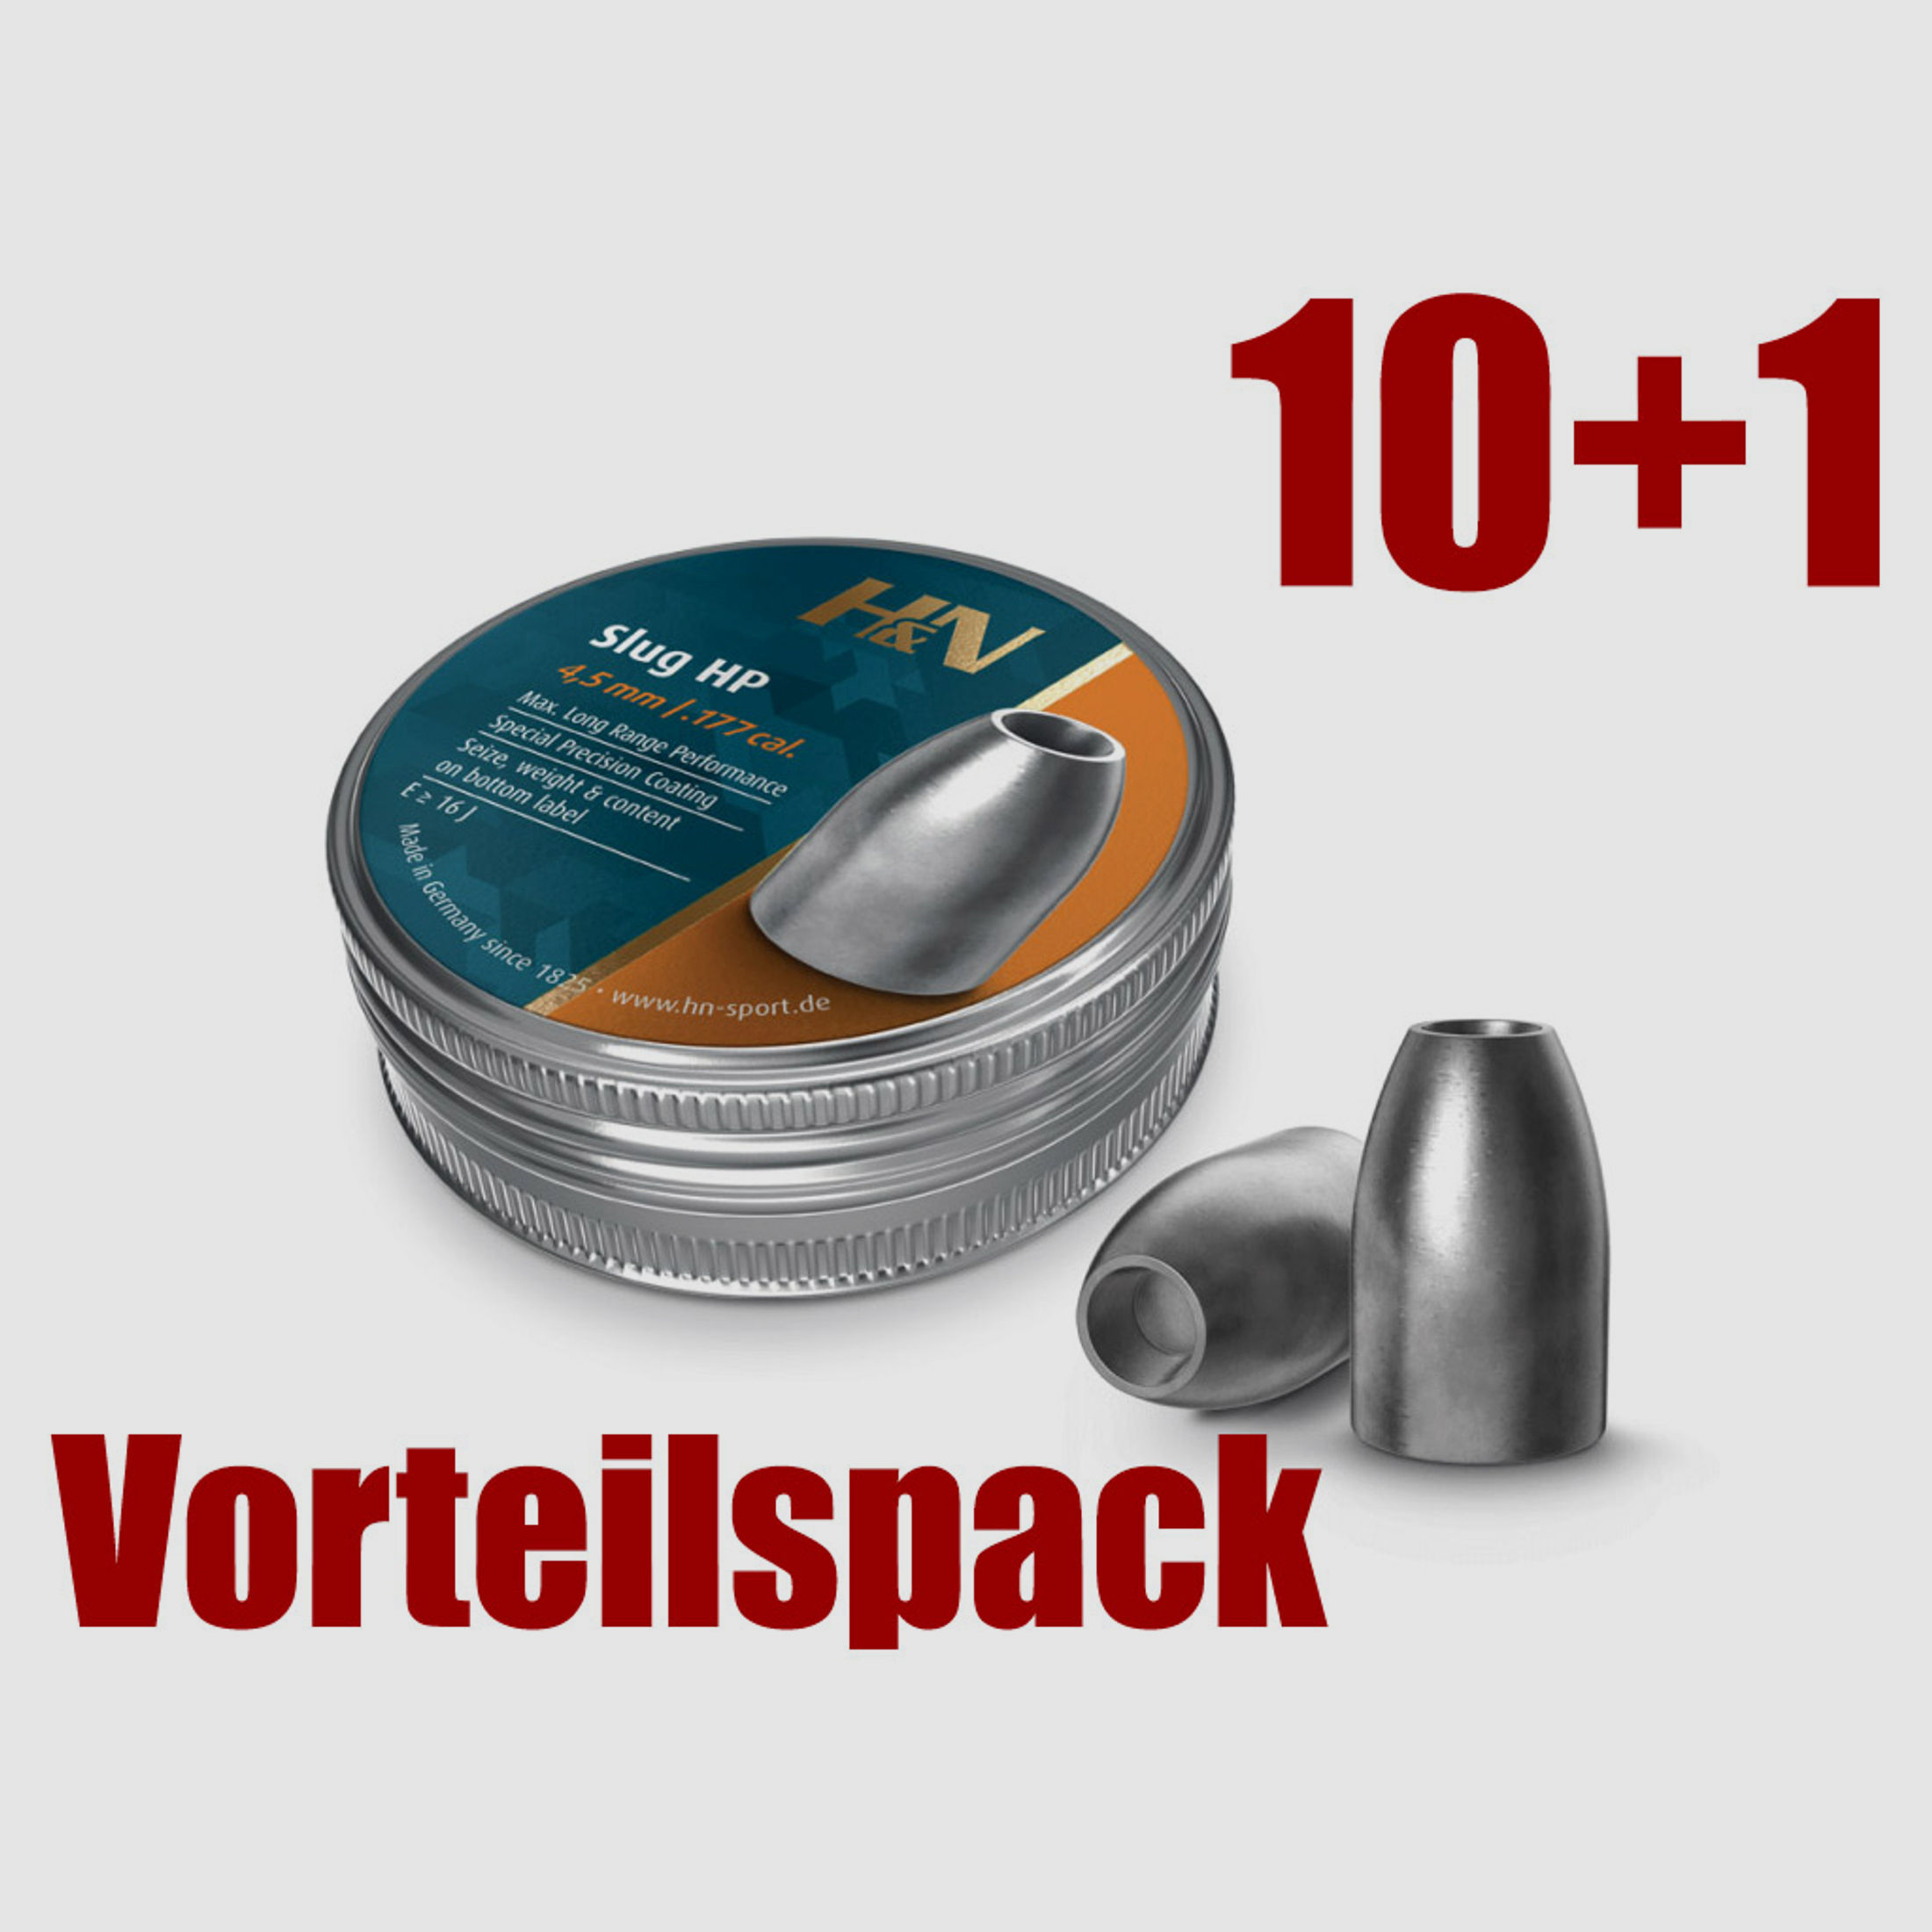 Vorsteilspack 10+1 Hohlspitz Diabolos H&N Slug HP Kaliber 4,51 mm 1,04 g 16 gr glatt 11 x 300 StĂĽck